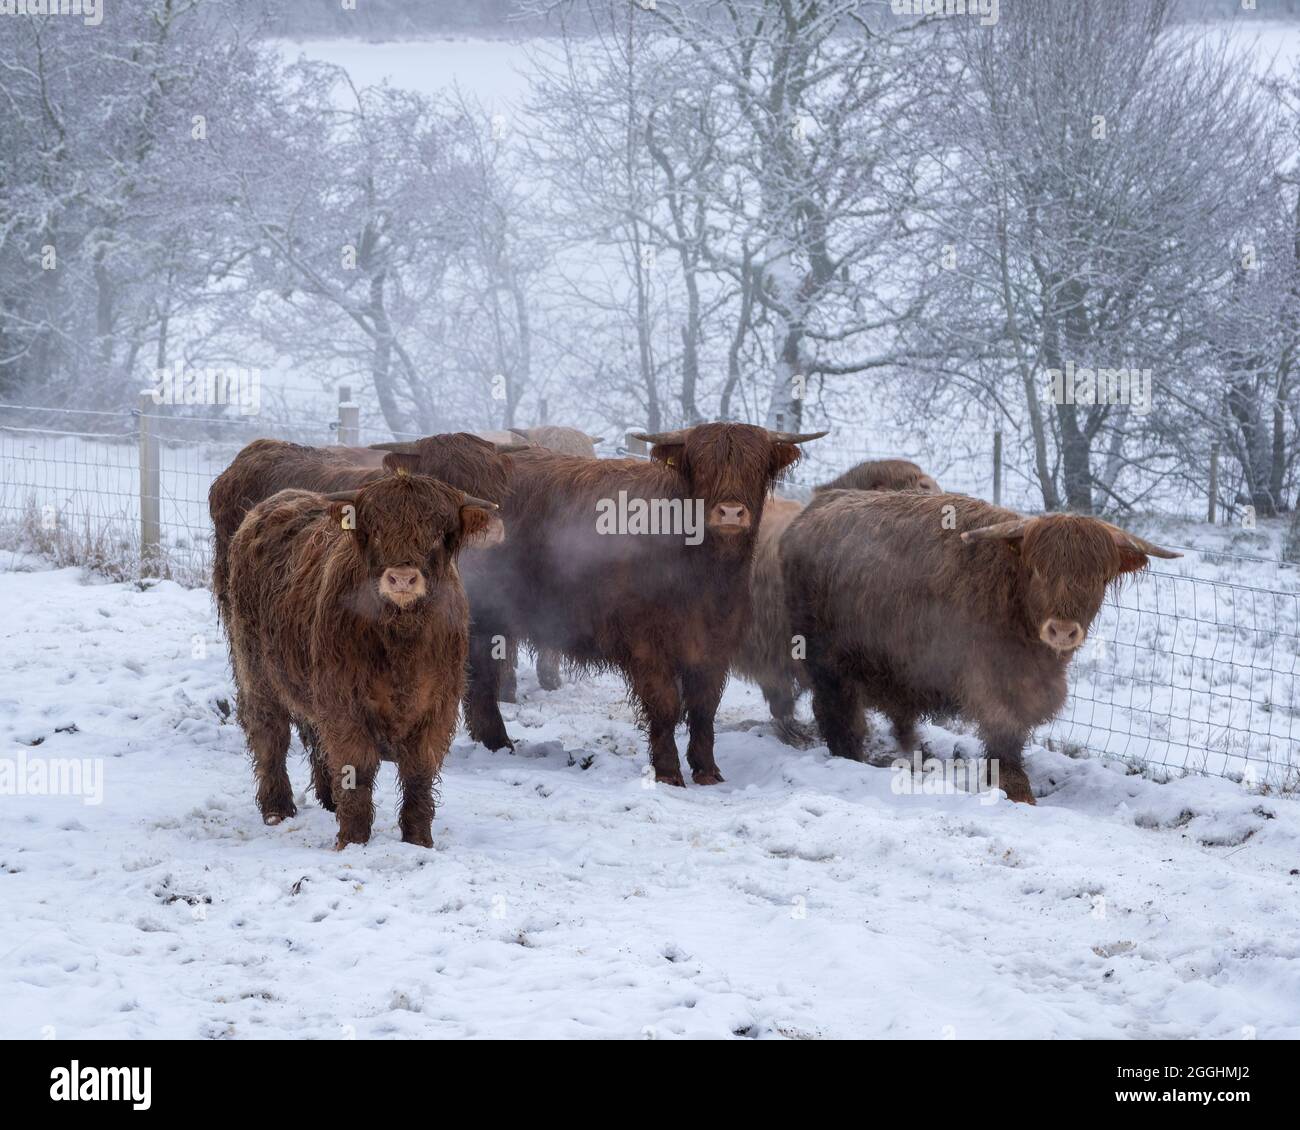 Vaches des Highlands sur une matinée froide en hiver. Près de Balnain, région des Highlands, Écosse Banque D'Images